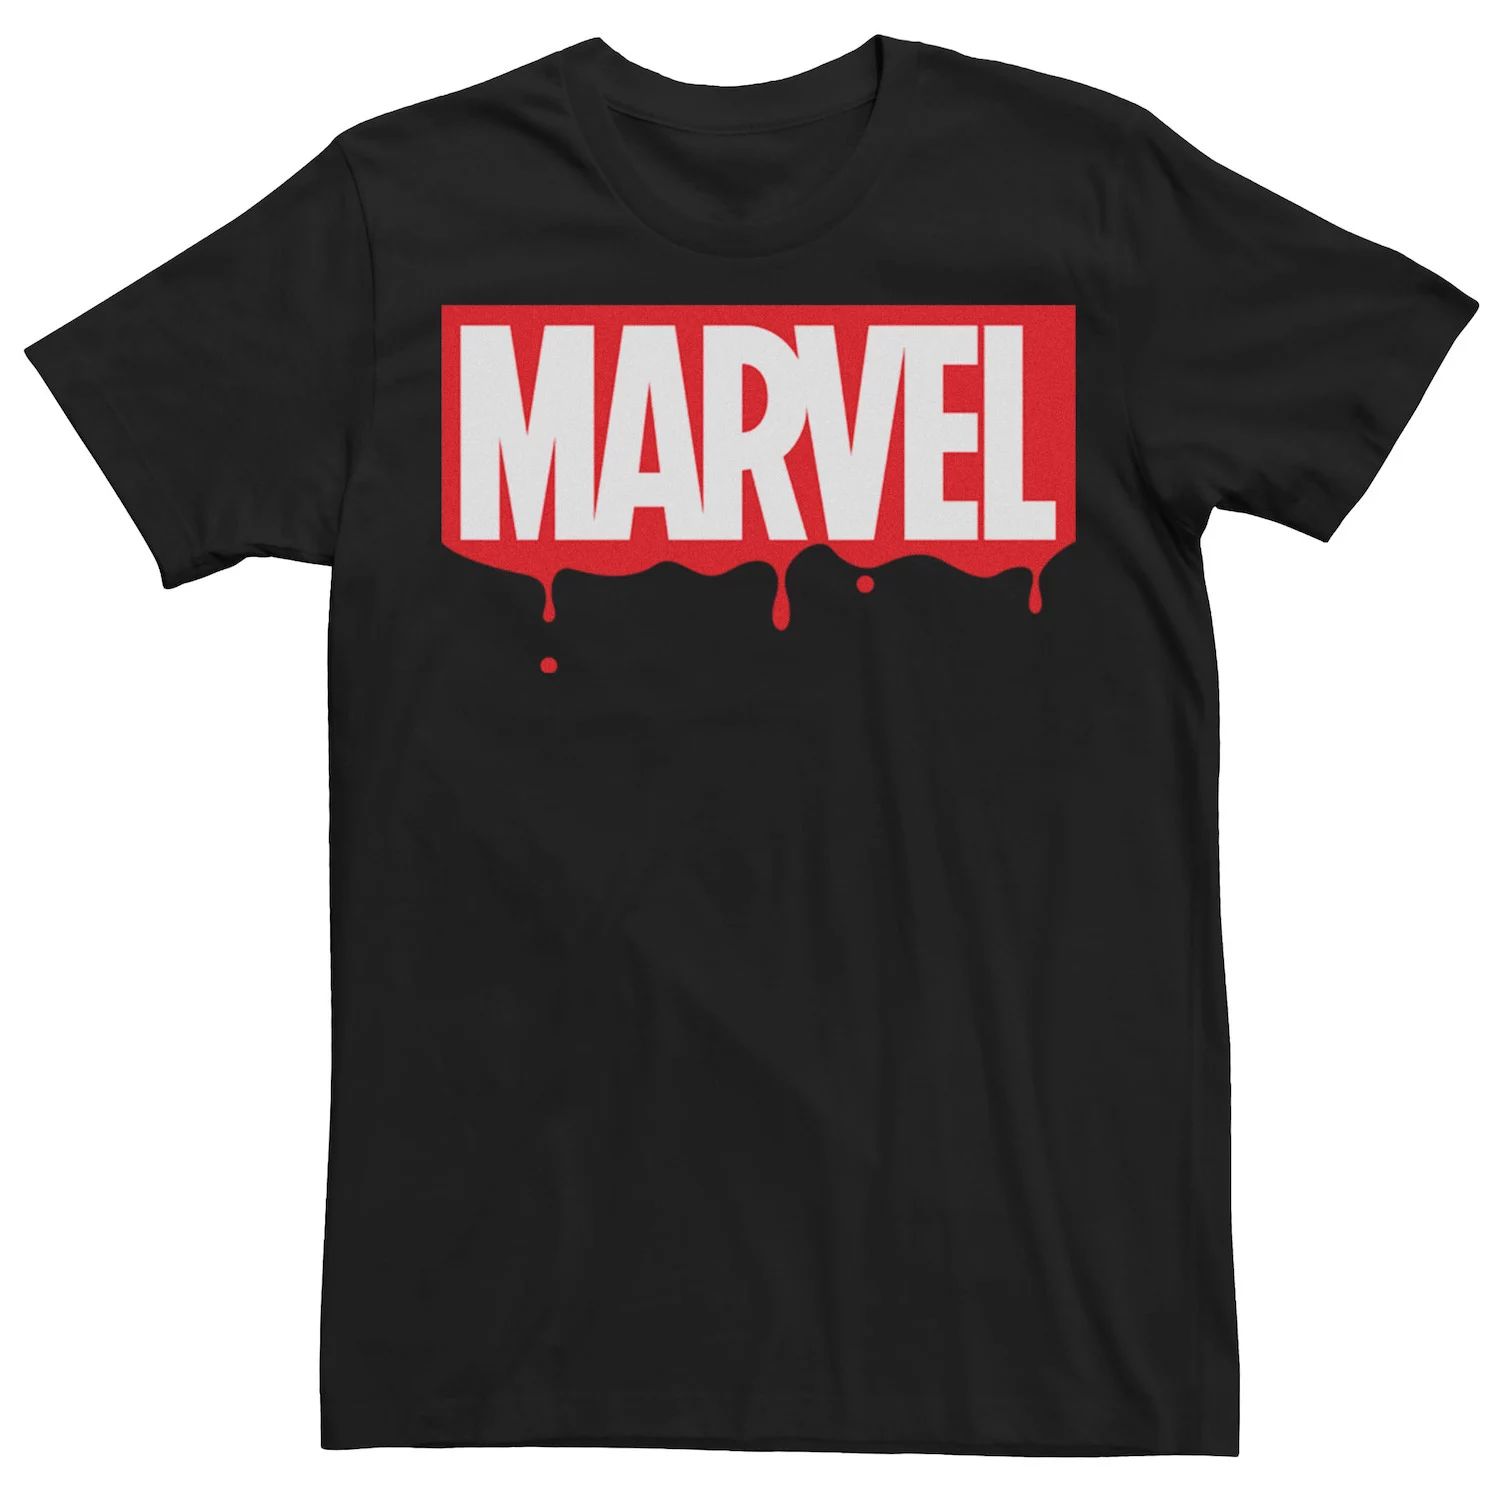 Мужская футболка с оригинальным логотипом и графическим рисунком Marvel Paint Dripping